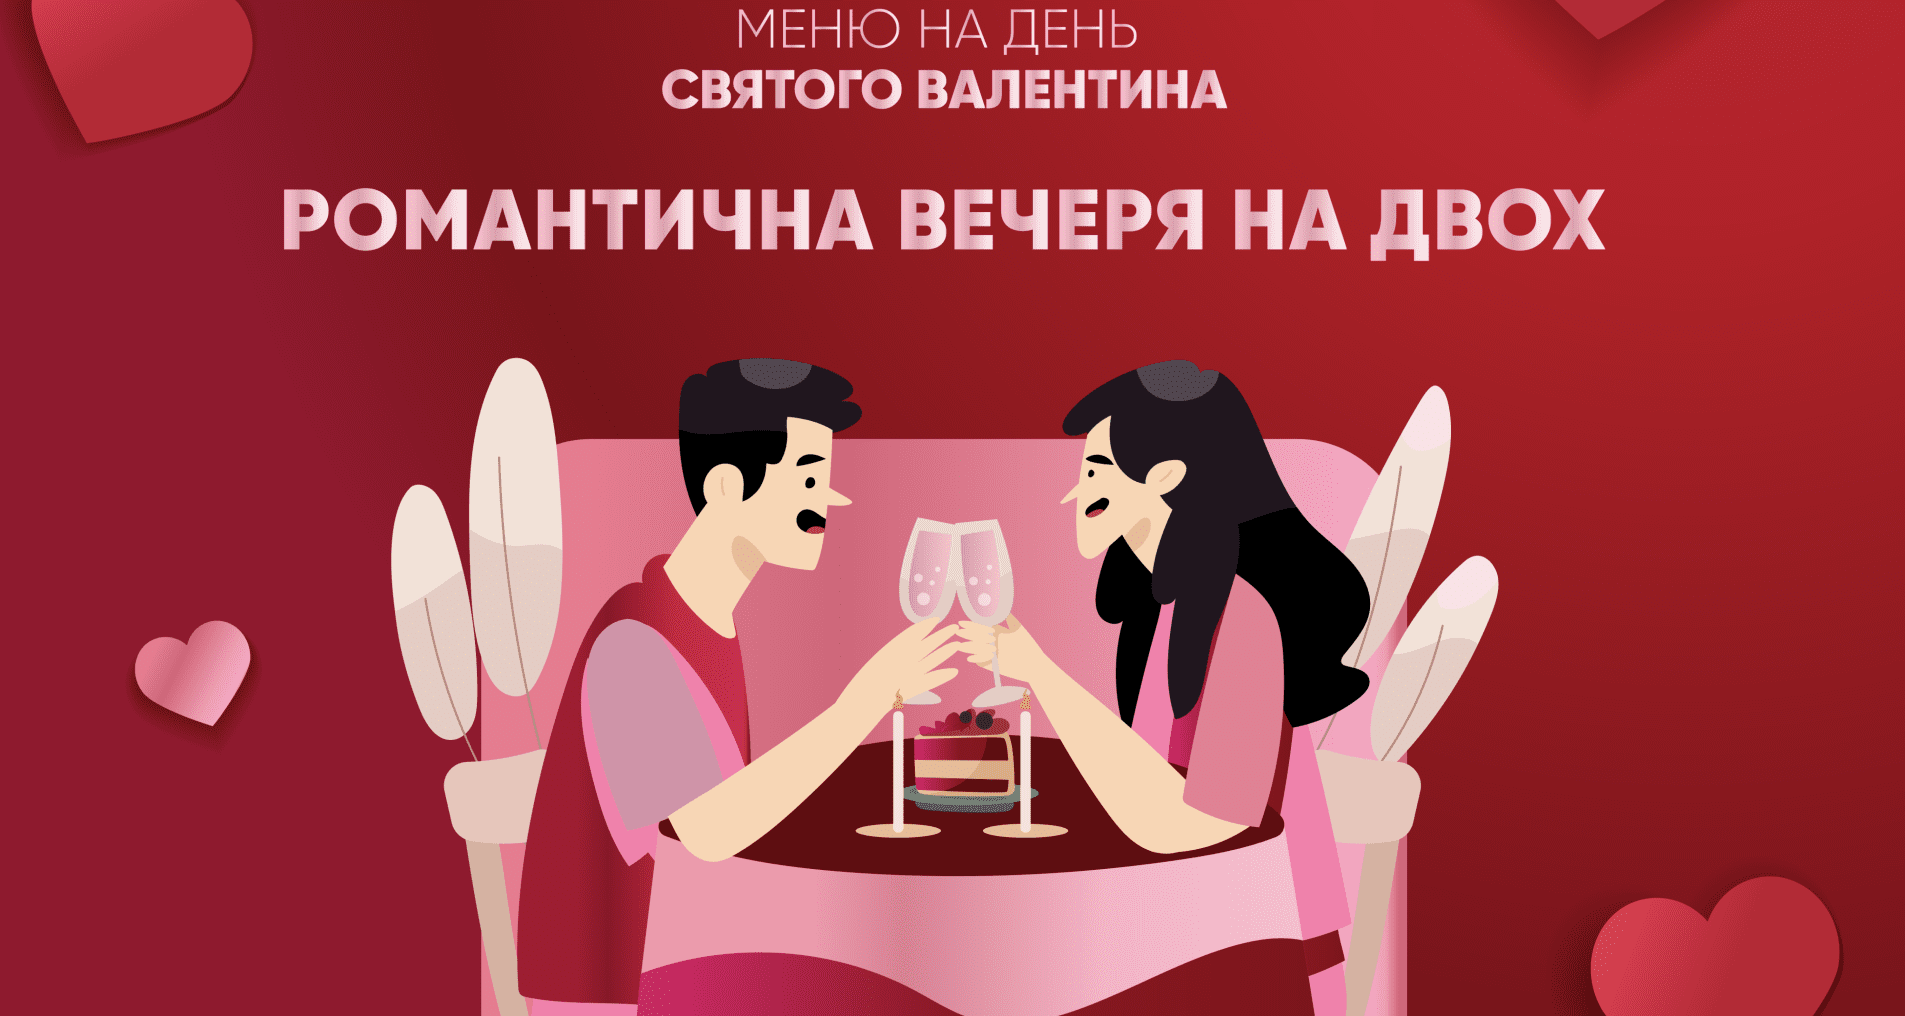 Рецепты на День святого Валентина: полное меню на двоих